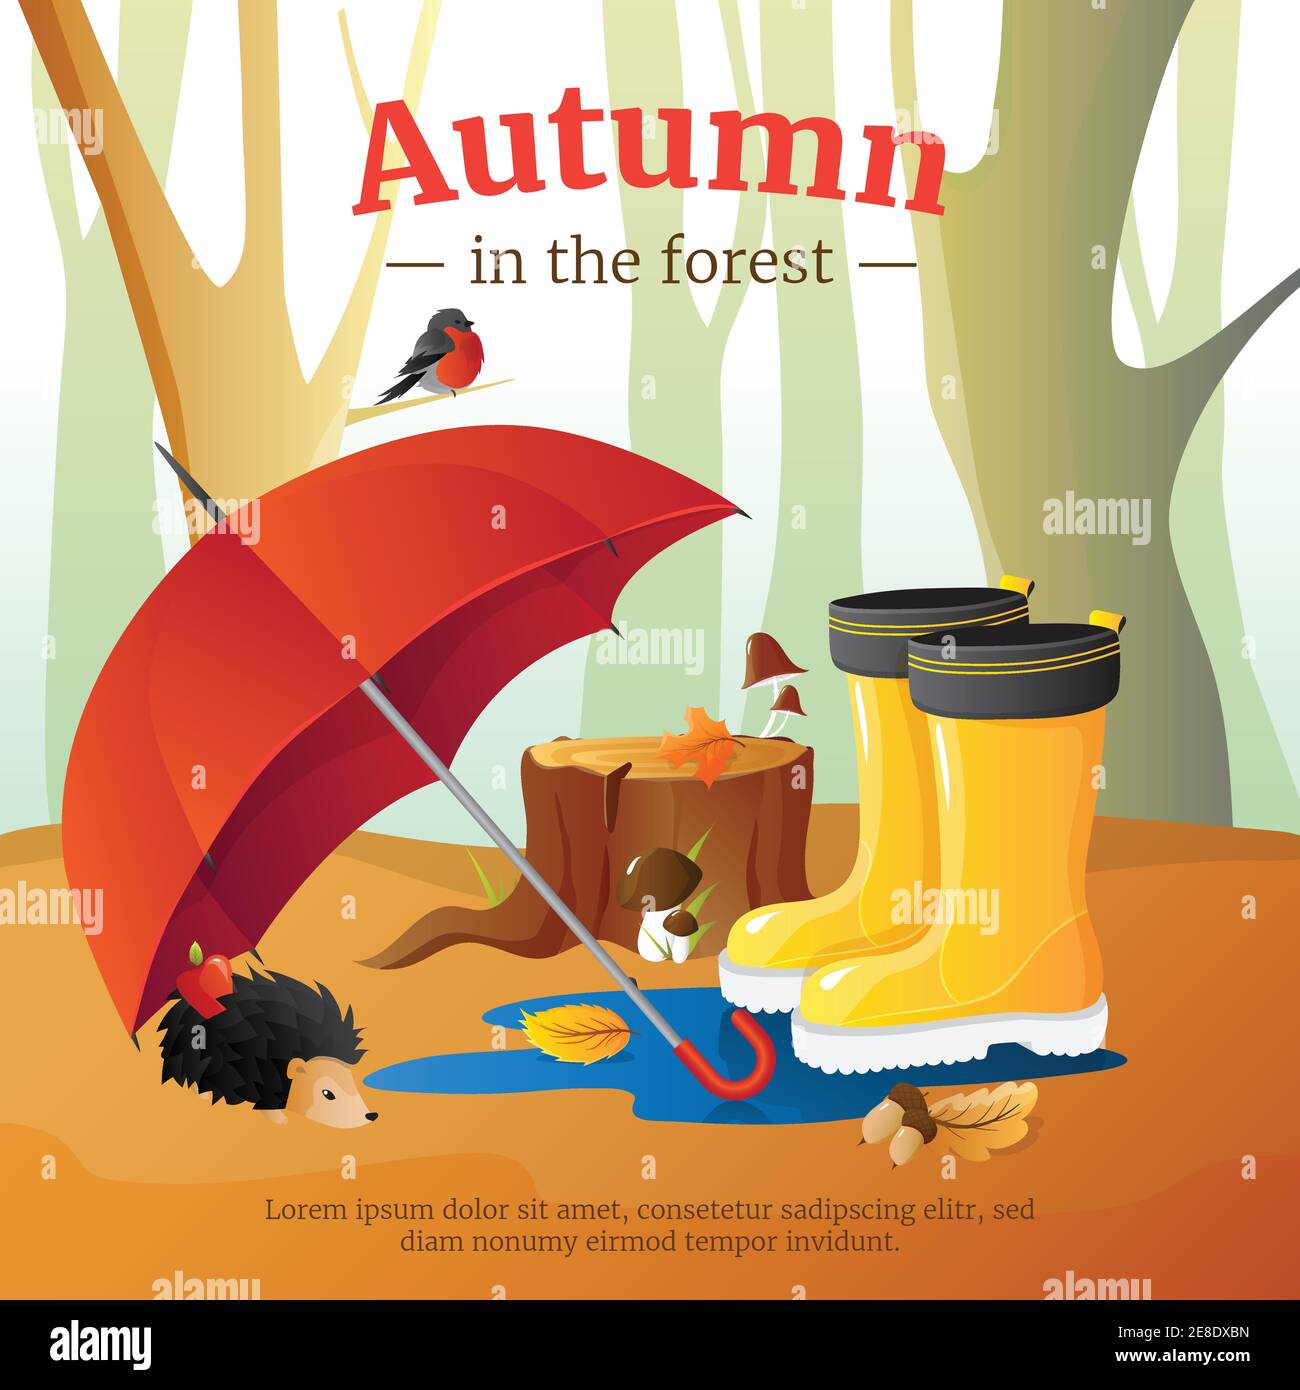 Herbst im Wald Plakat mit rotem Regenschirm wellingtons und Igel Mit Bäumen Stämme Hintergrund Cartoon Vektor Illustration Stock Vektor